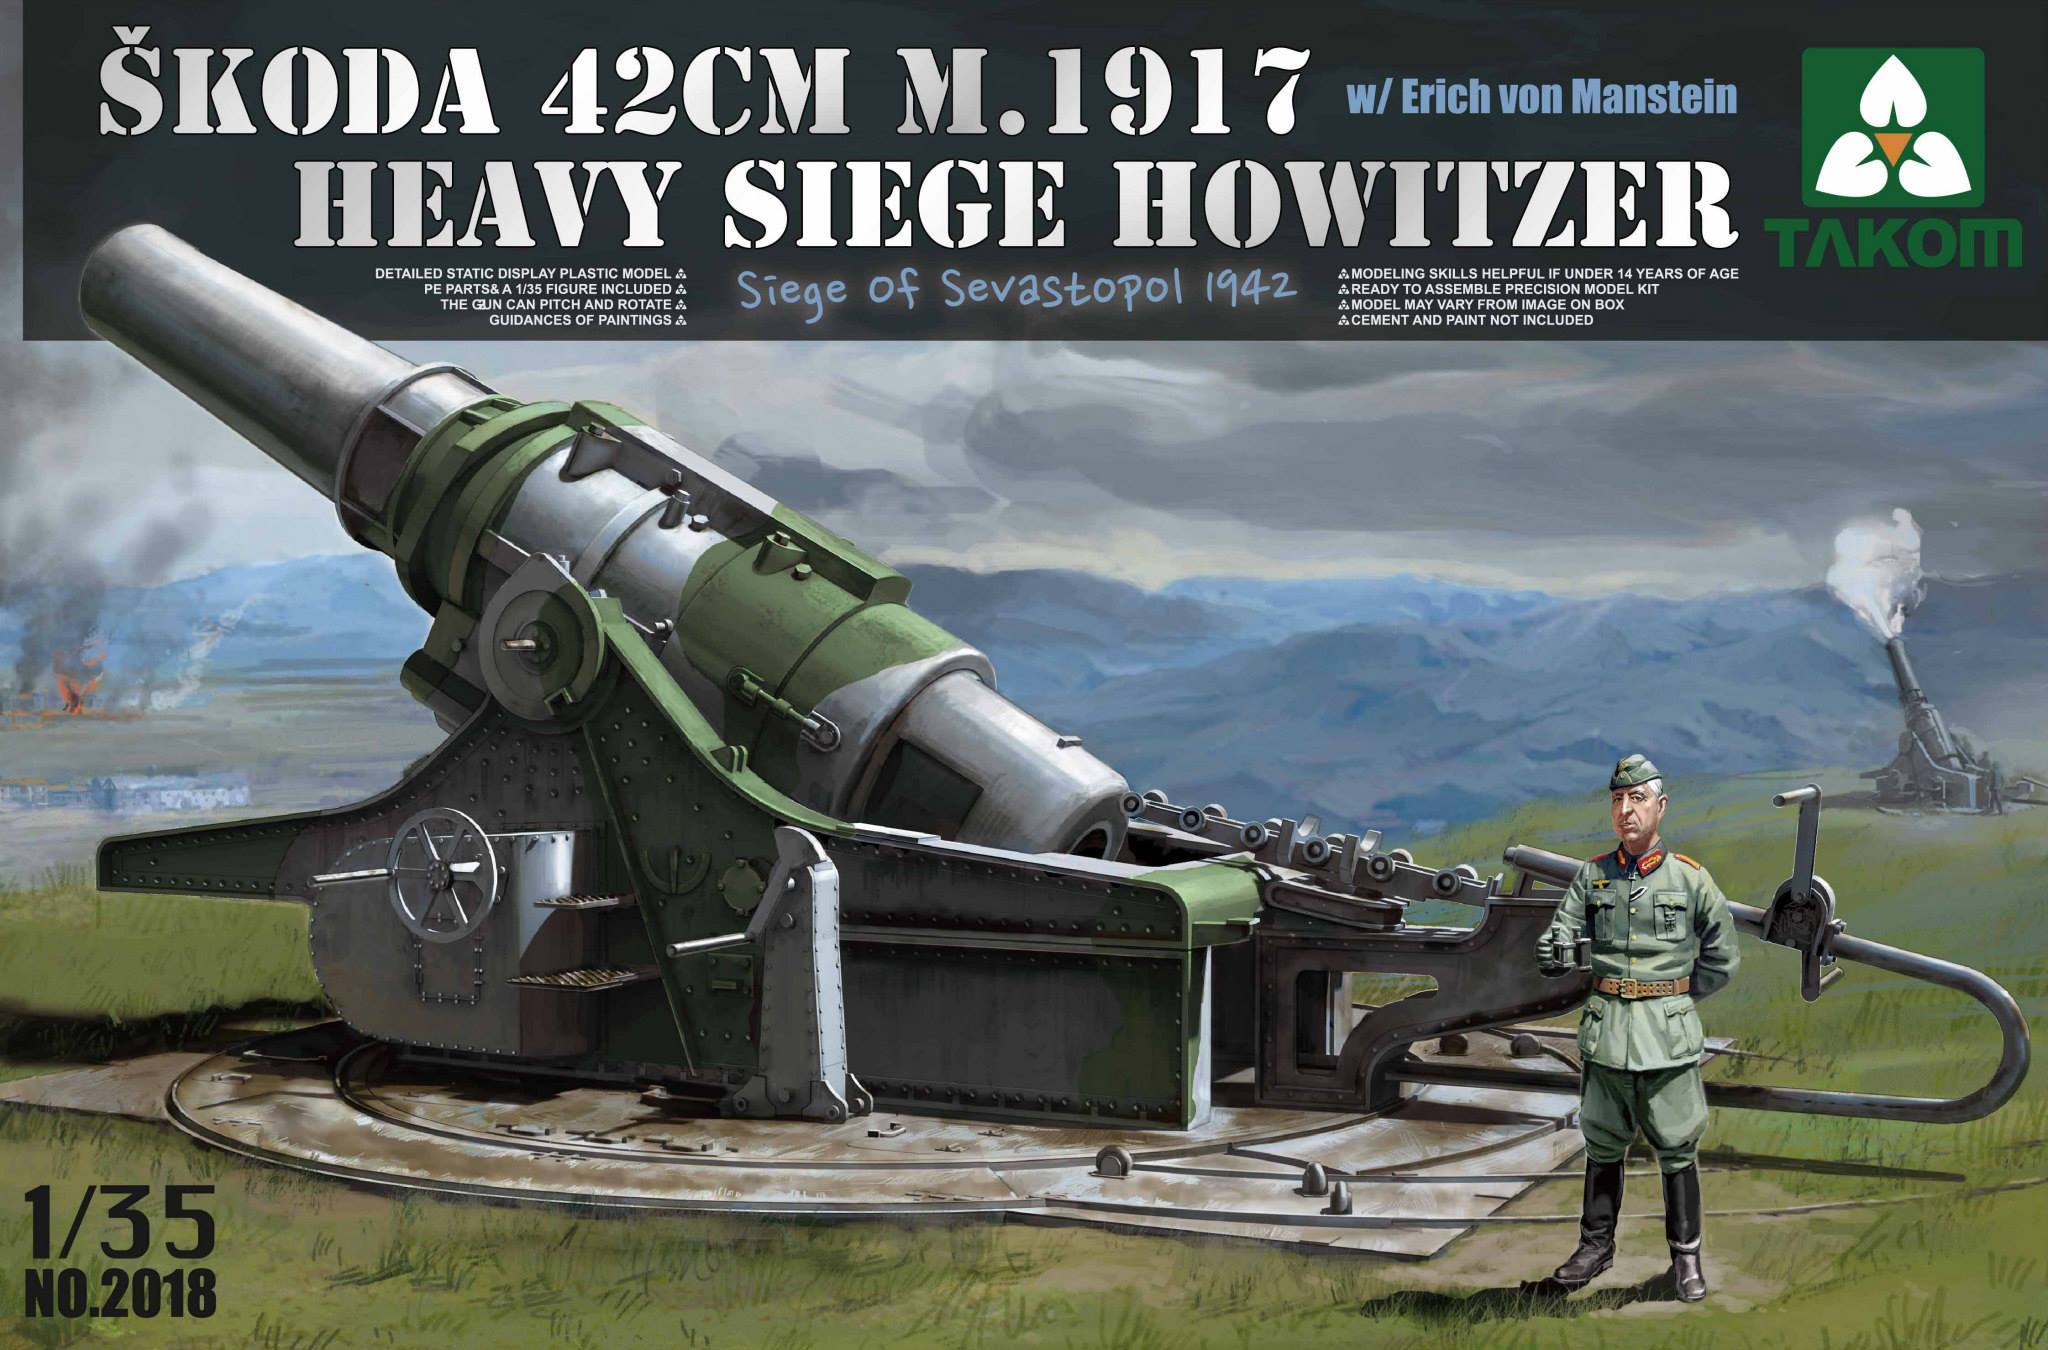 Škoda 42cm M.1917 Heavy Siege Howitzer with von Manstein figure